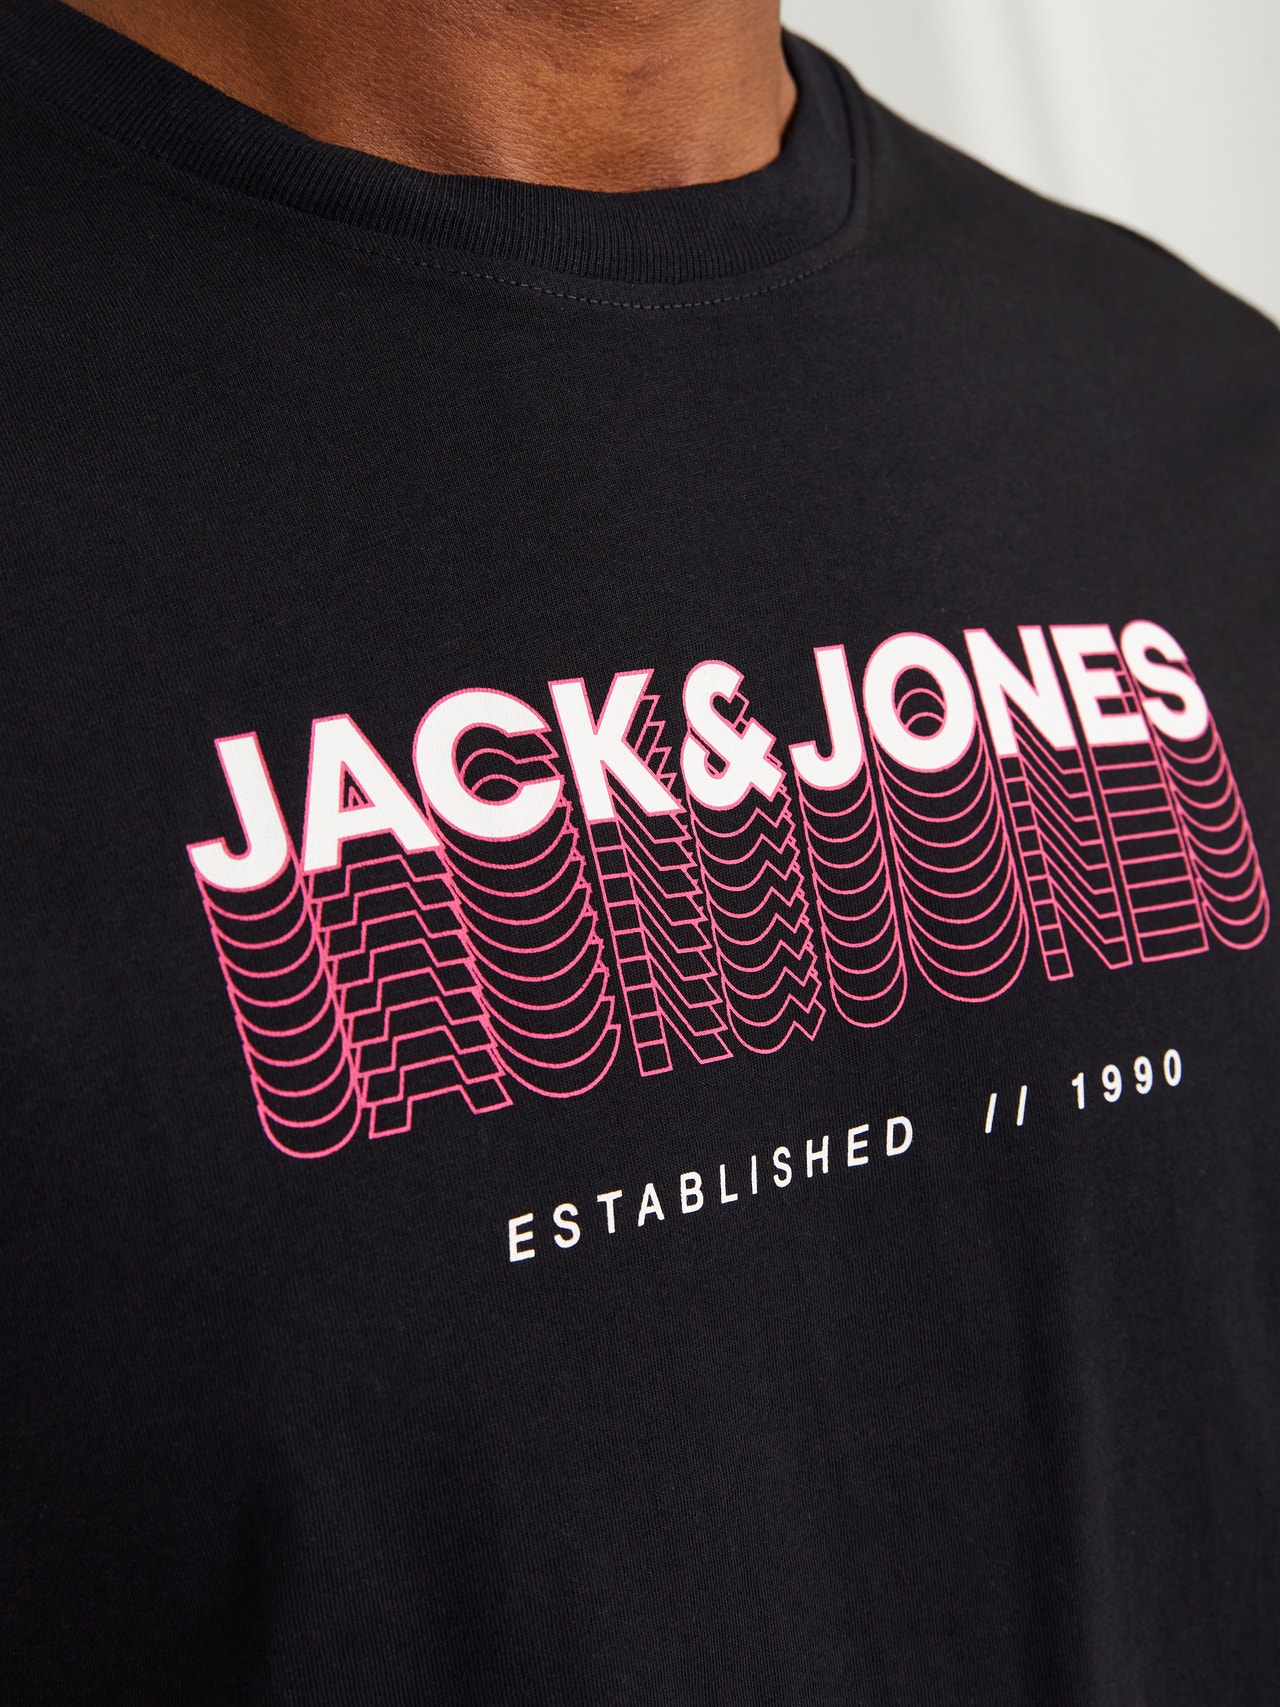 Jack & Jones Gedruckt Rundhals T-shirt -Black - 12255028